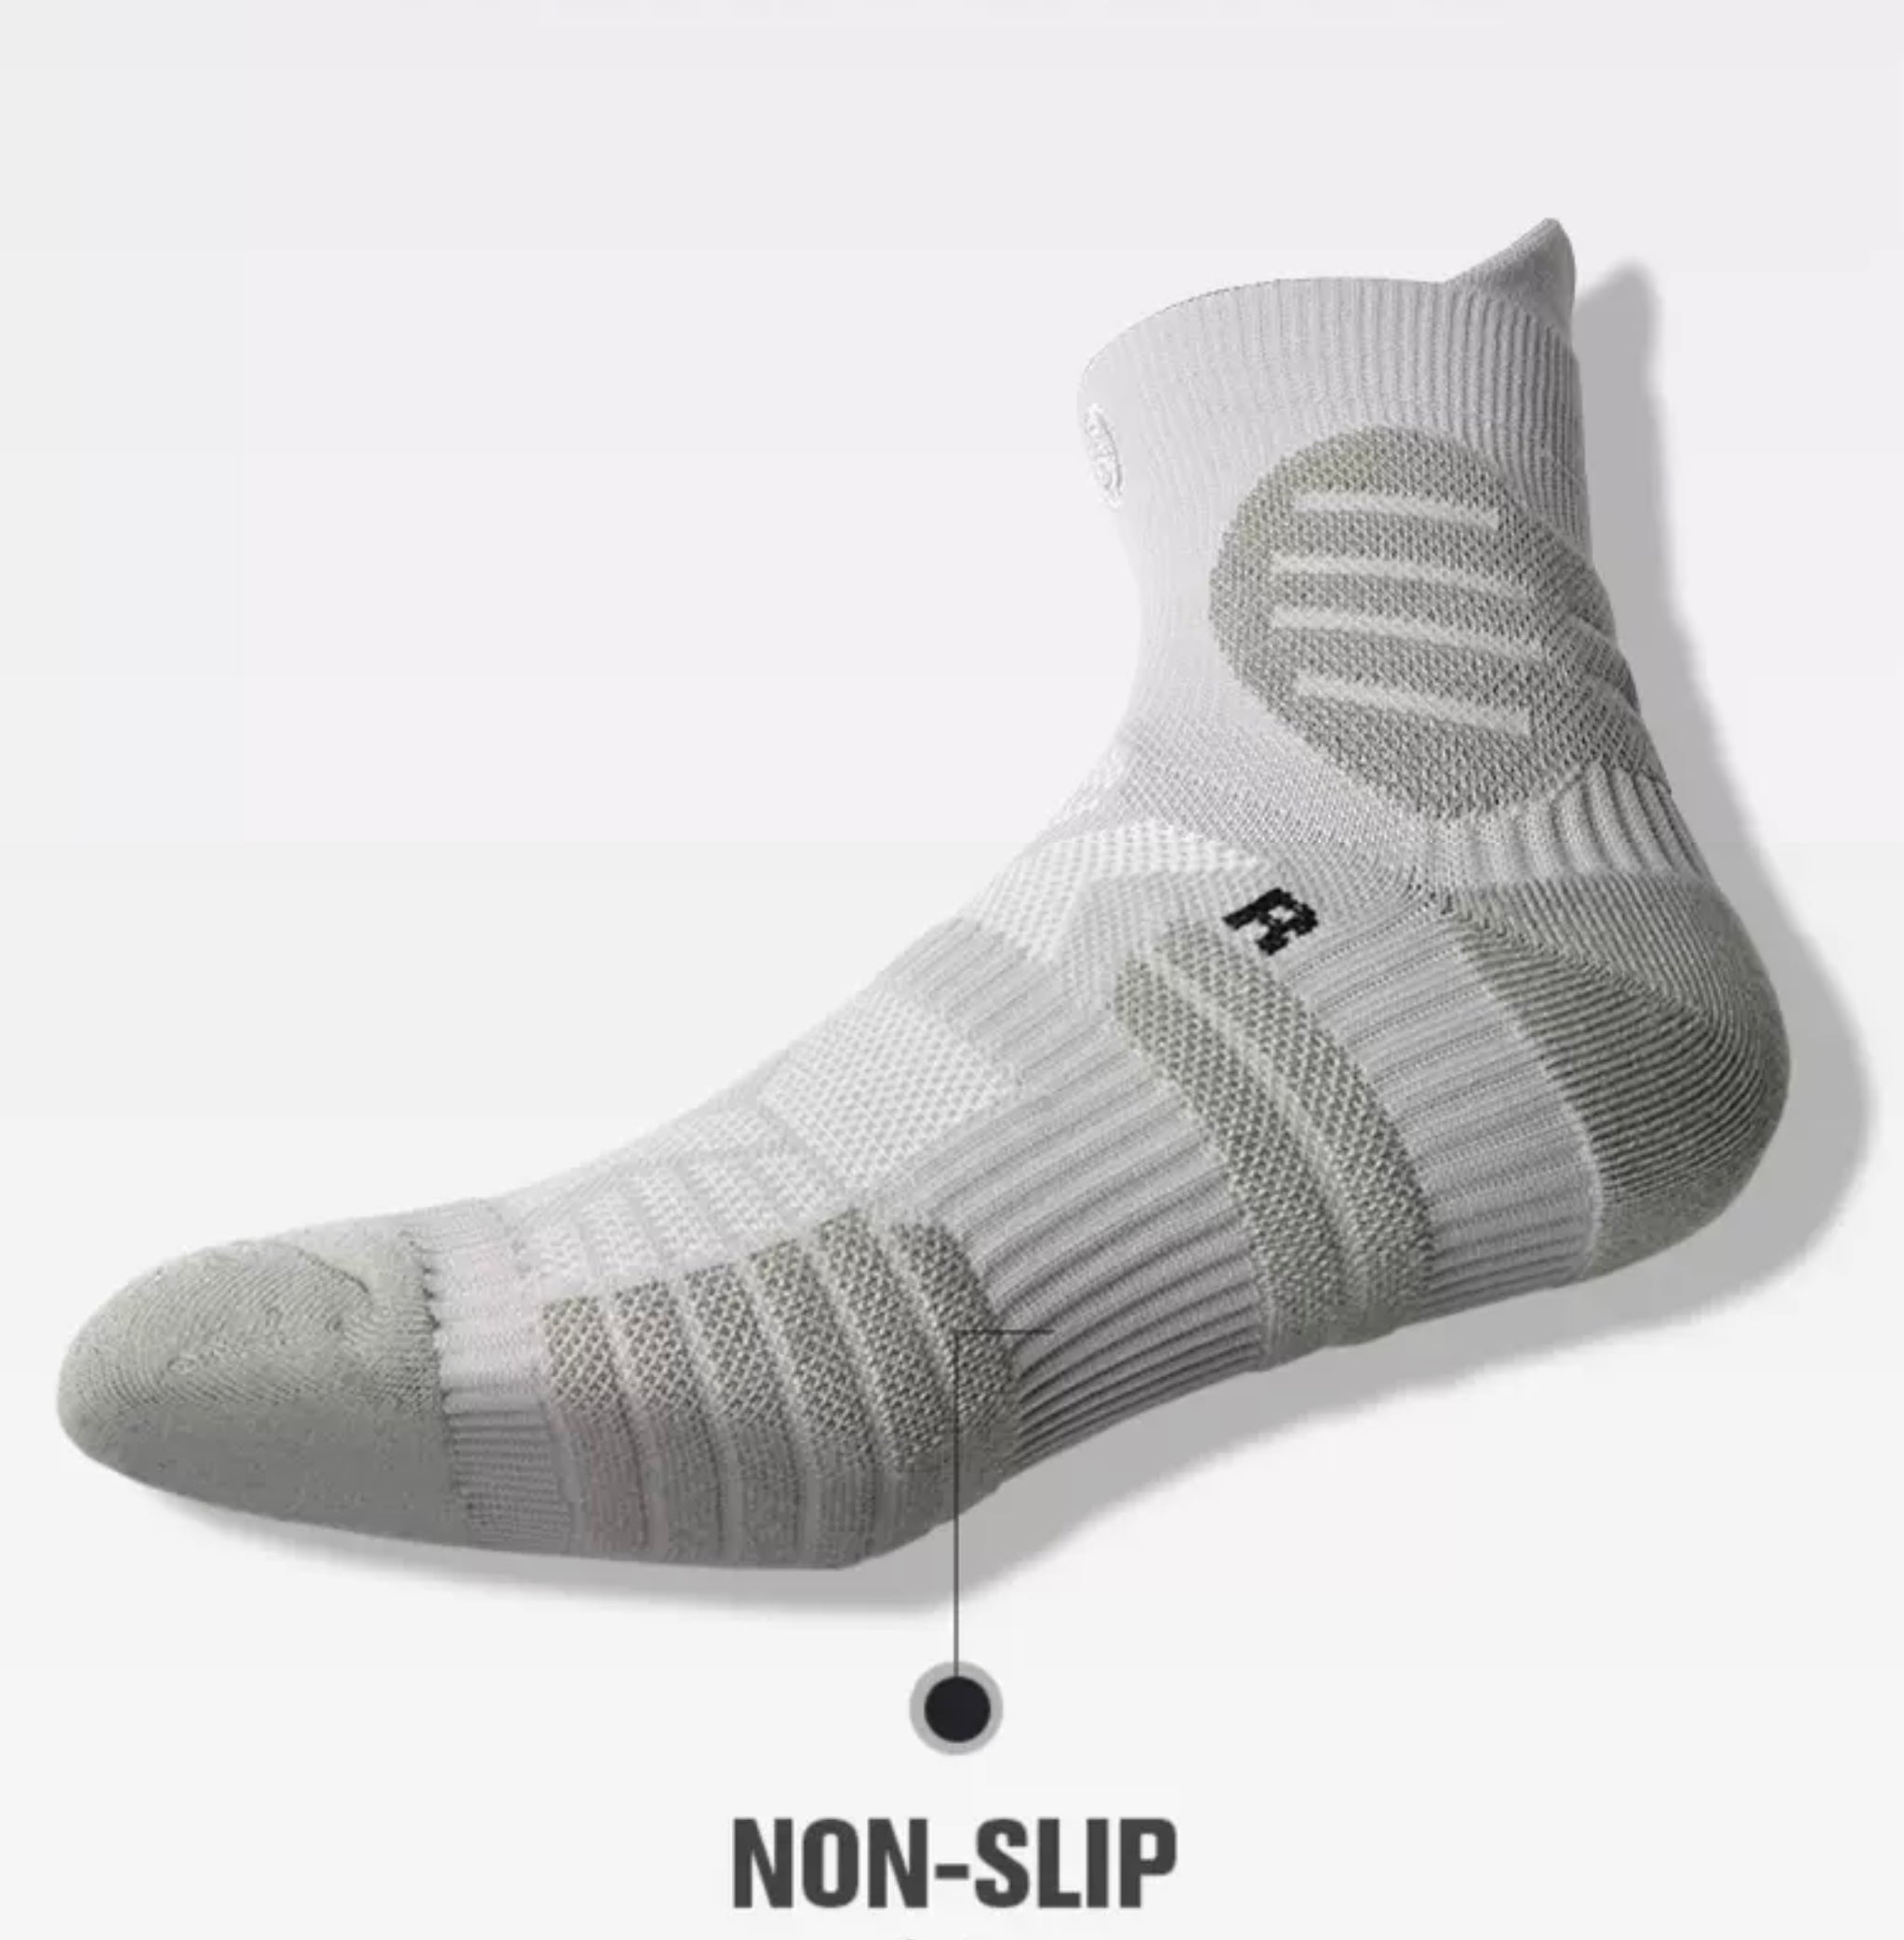 Top Ankle Sock 2021 | Non-Slip Socks | Cushioned Socks For Men | SMRTFT 